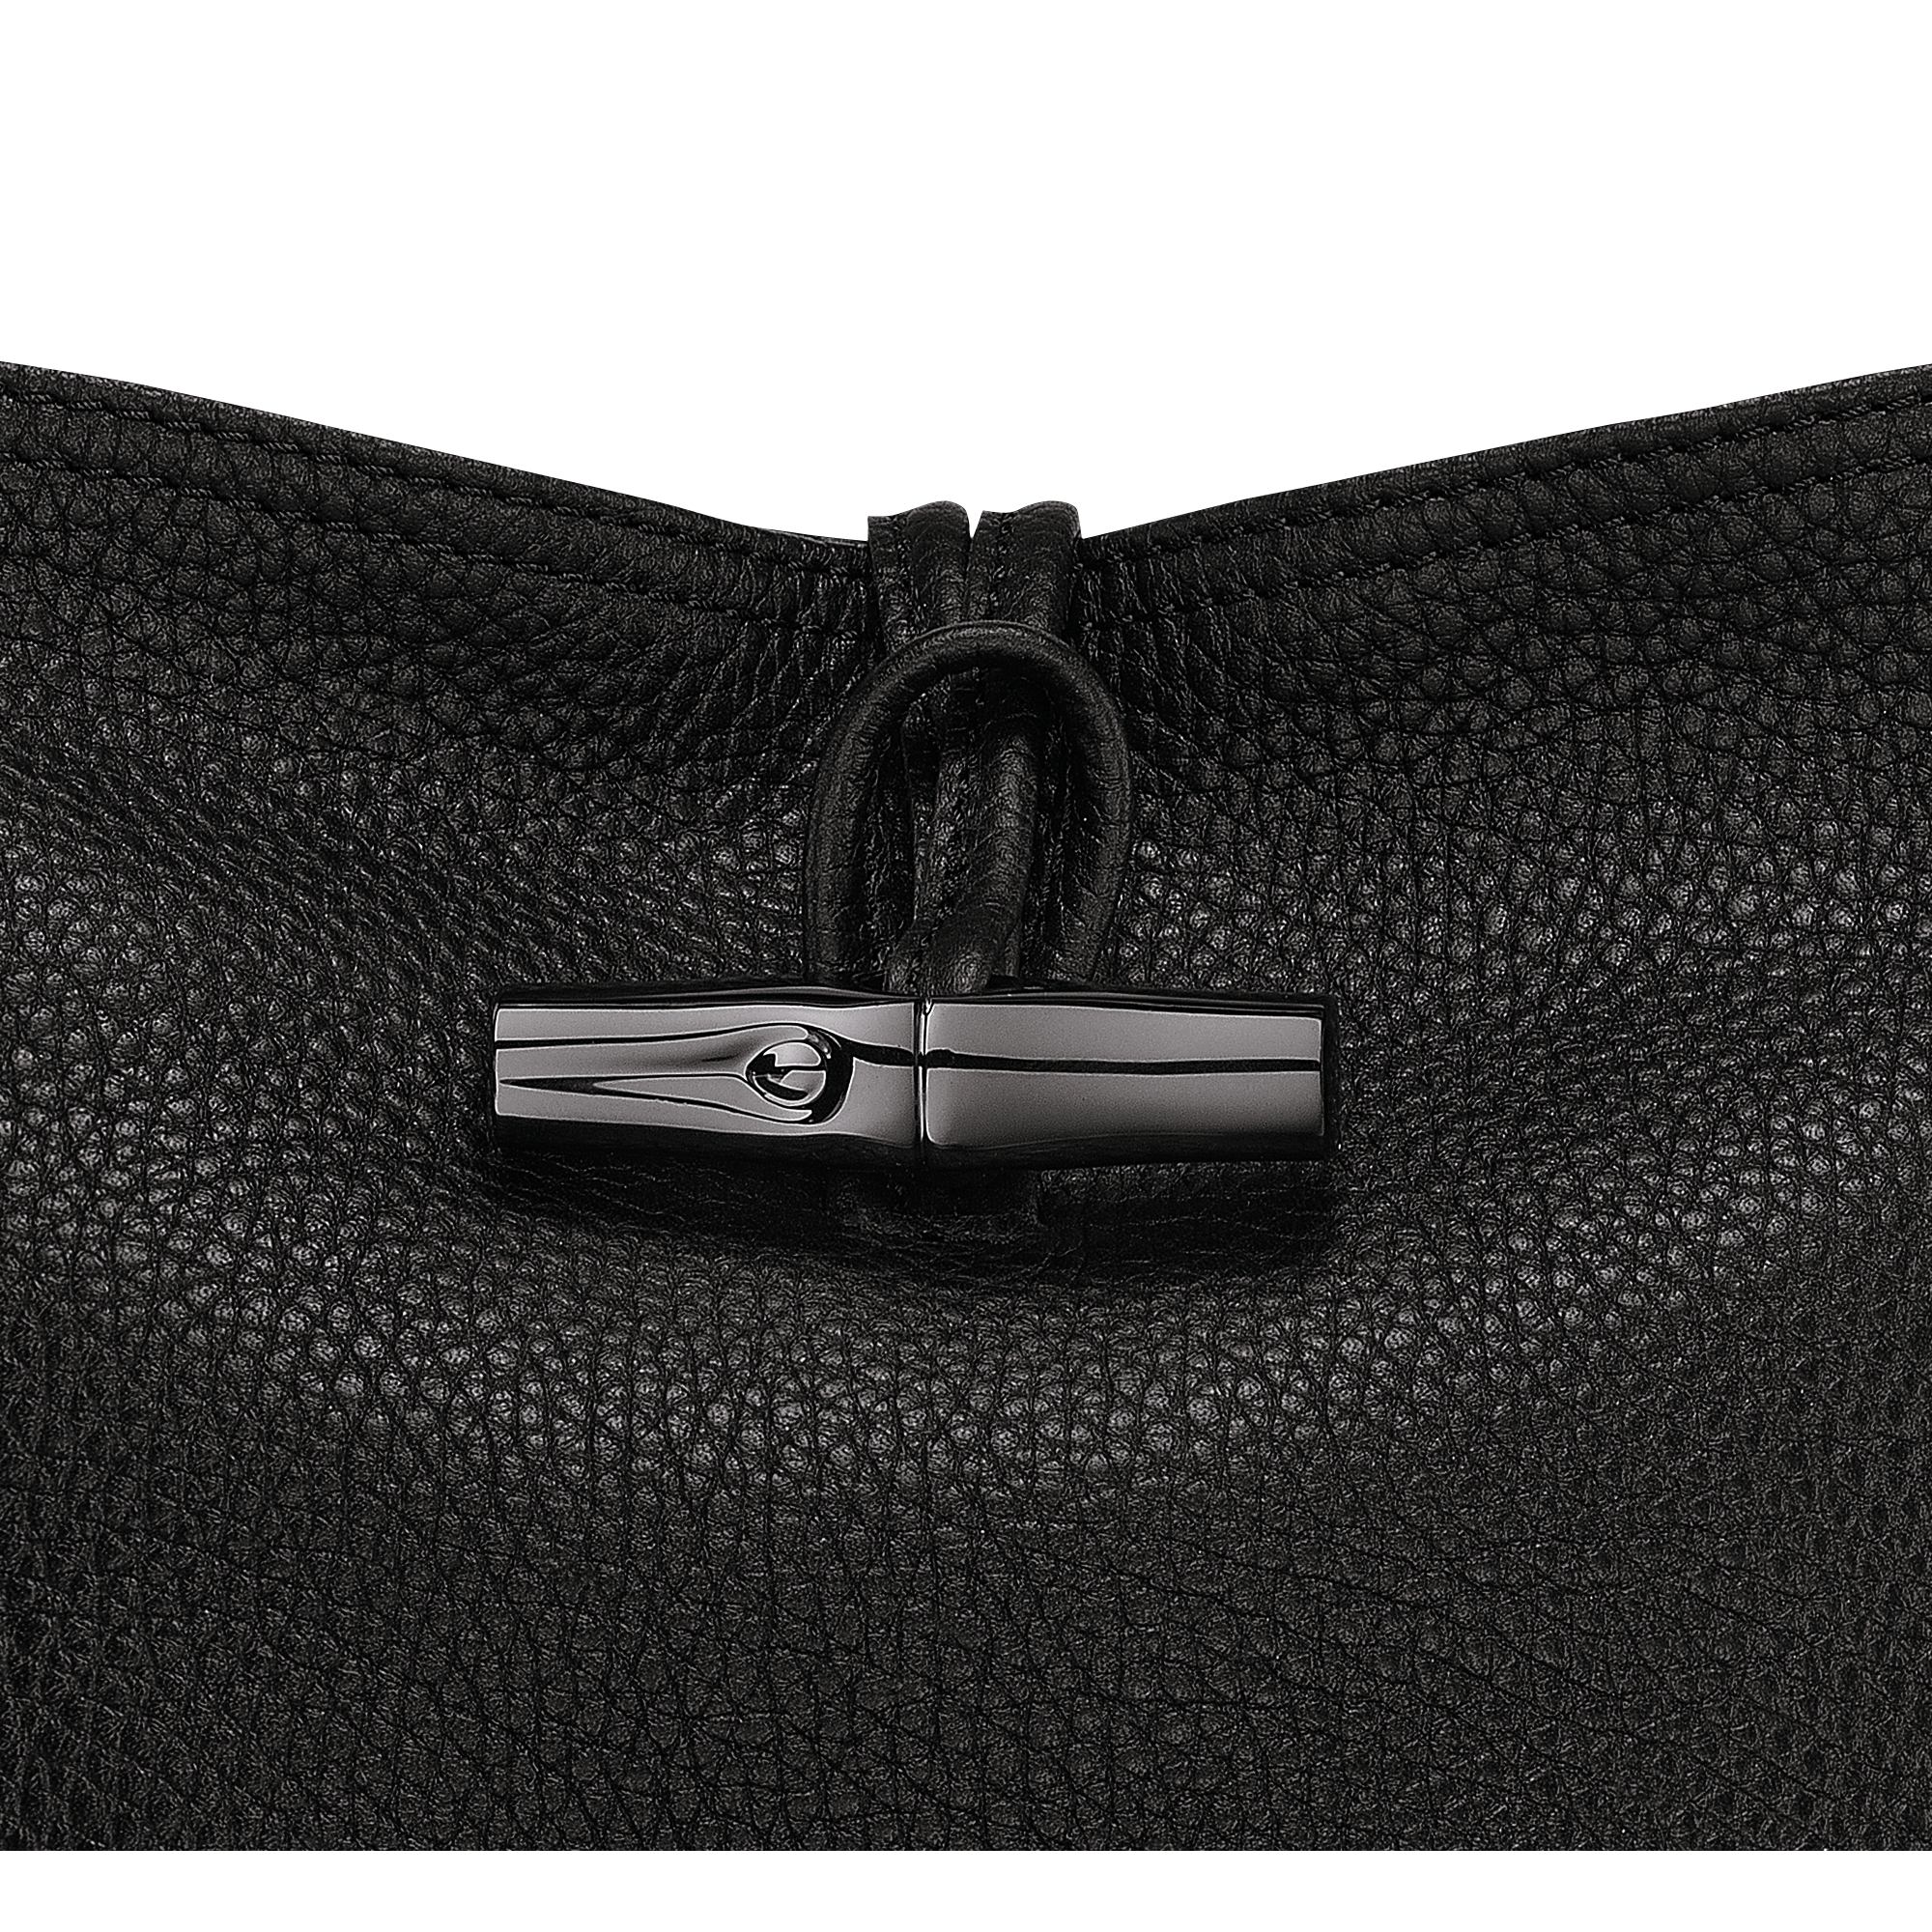 Roseau Essential L Tote bag Black - Leather (L2686968001)